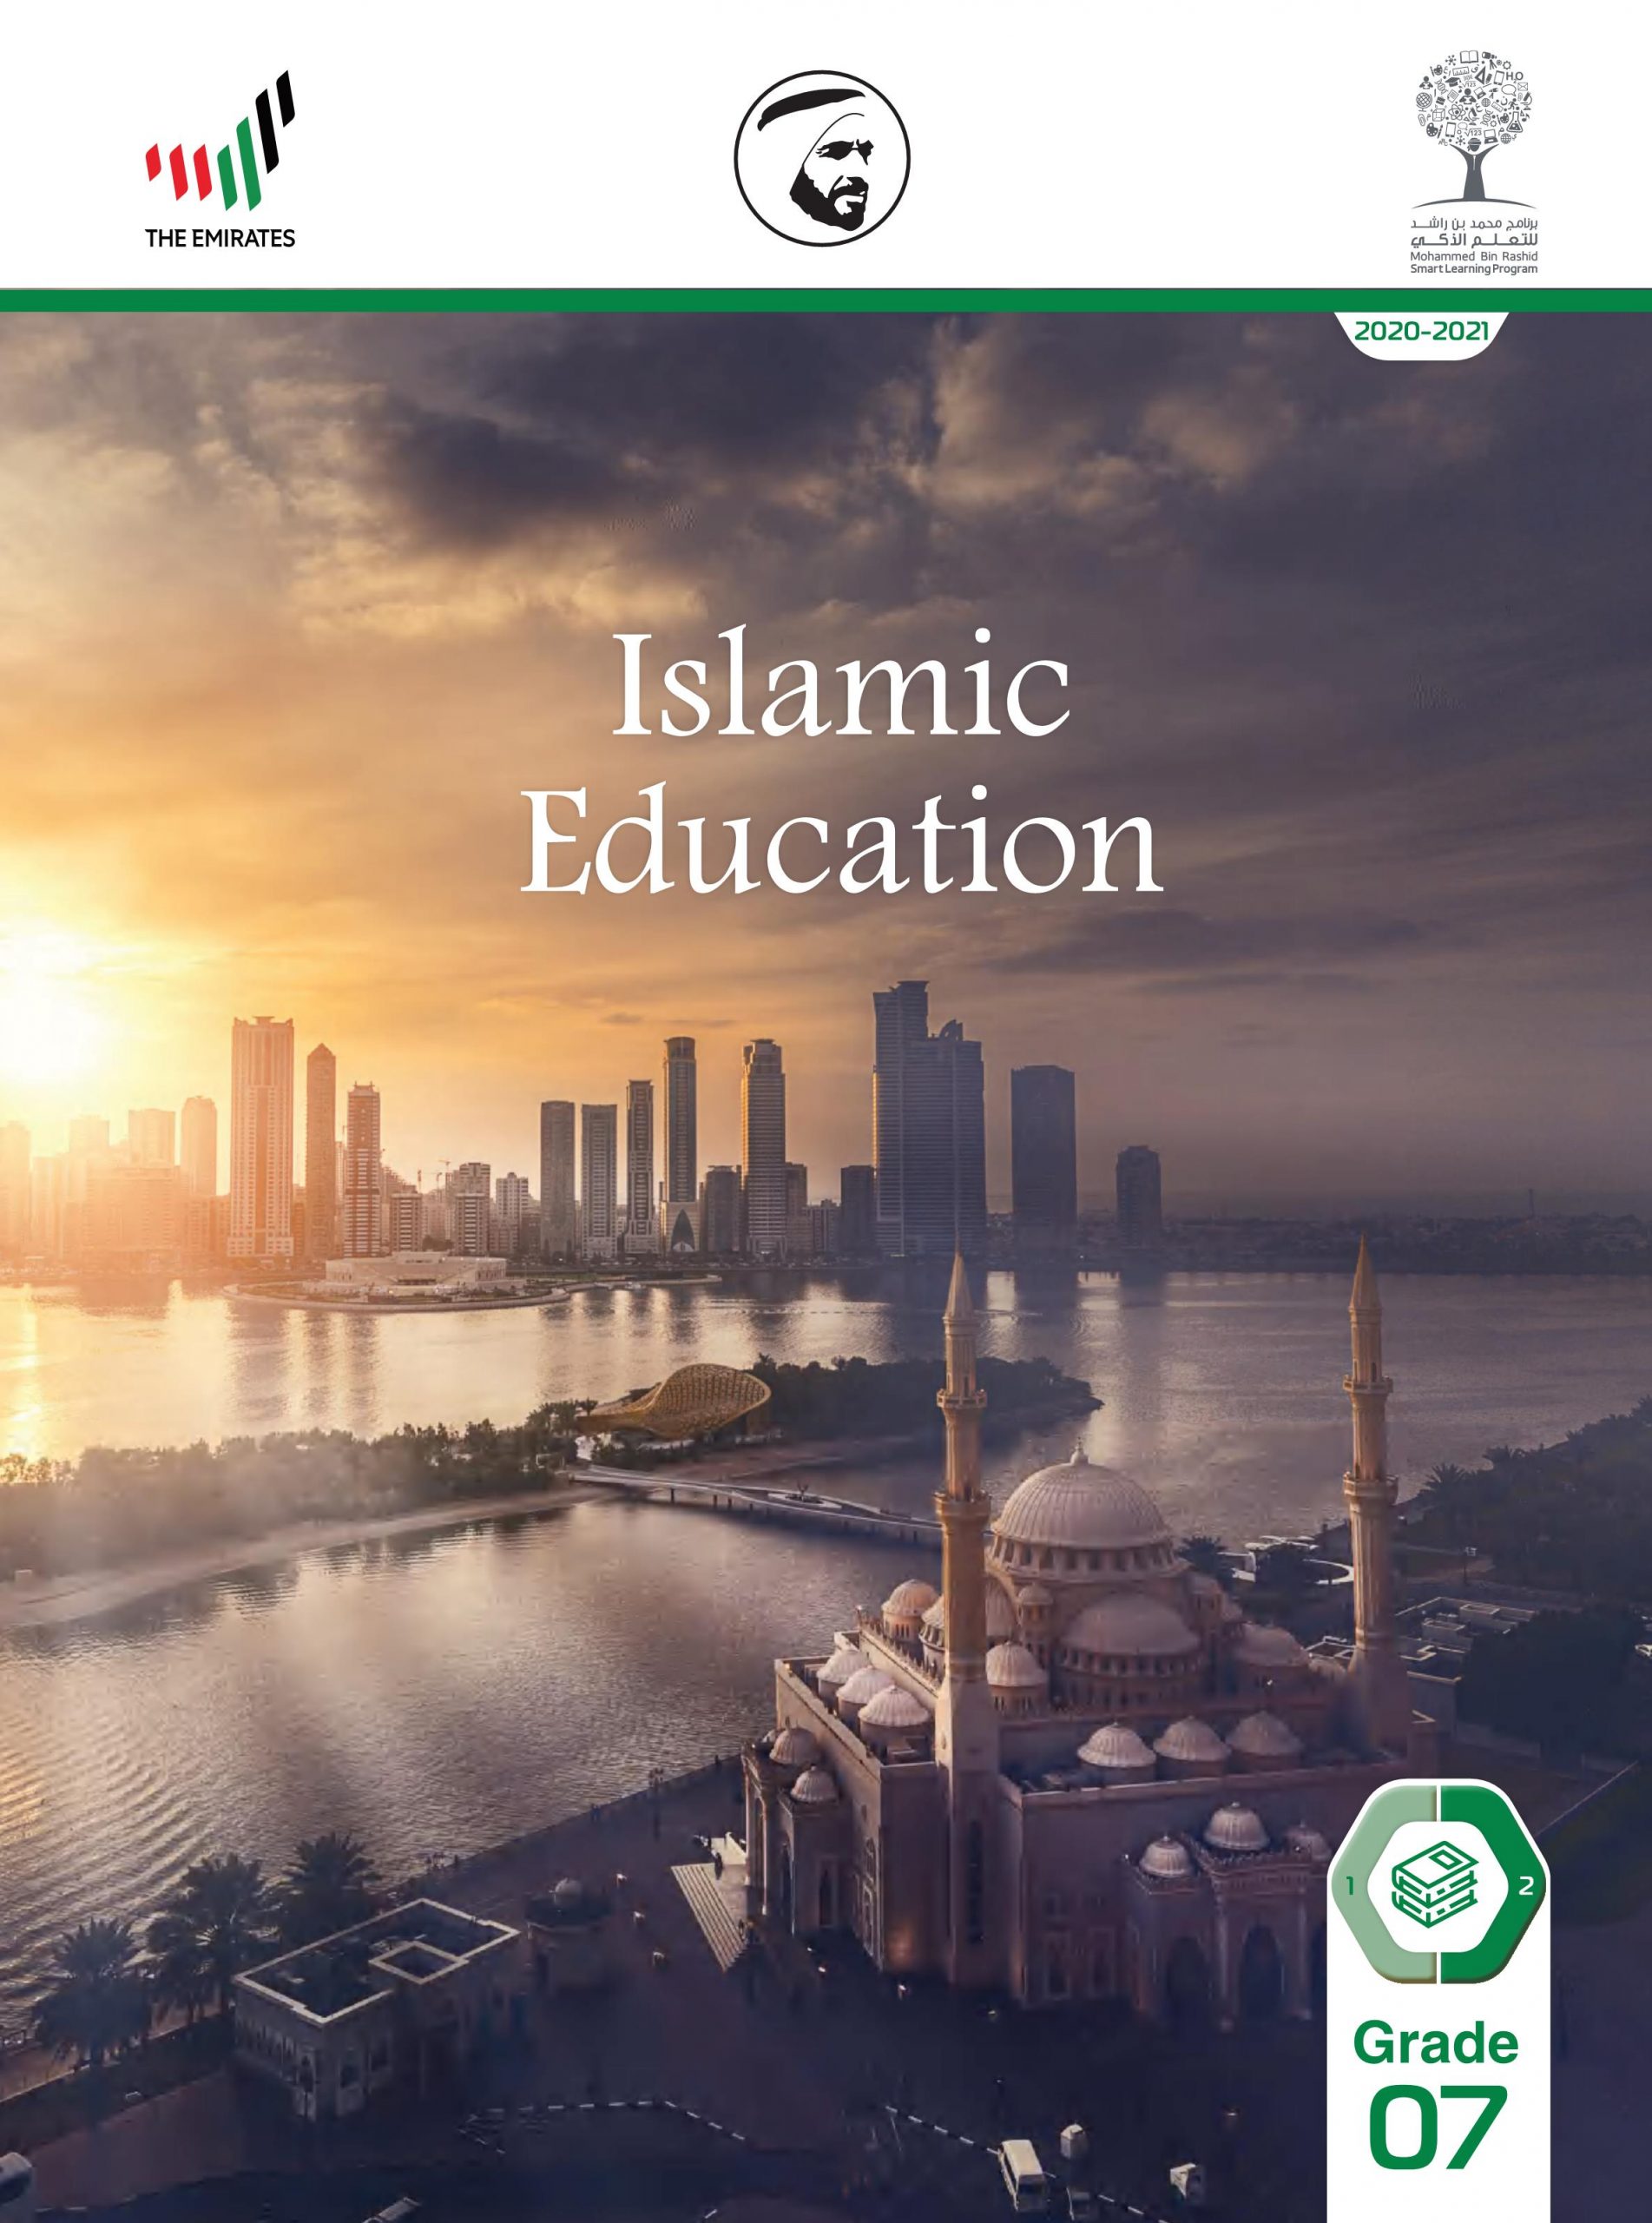 كتاب الطالب لغير الناطقين باللغة العربية الفصل الدراسي الثاني 2020-2021 الصف السابع مادة التربية الاسلامية 